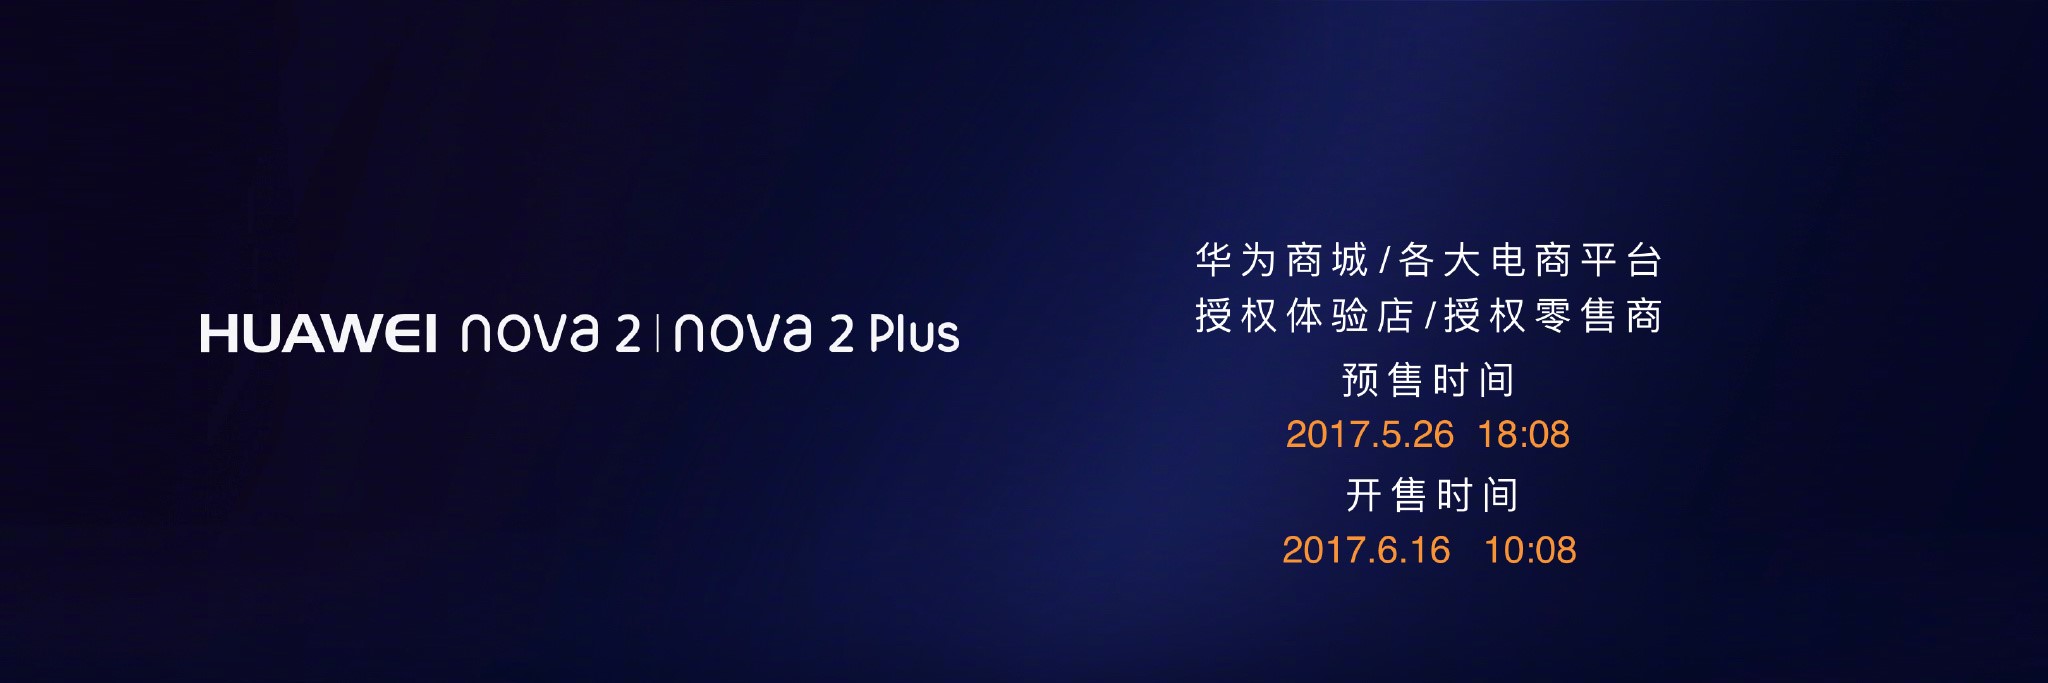 颜值爆表拍照神器HUAWEI nova2公布 市场价2499元起